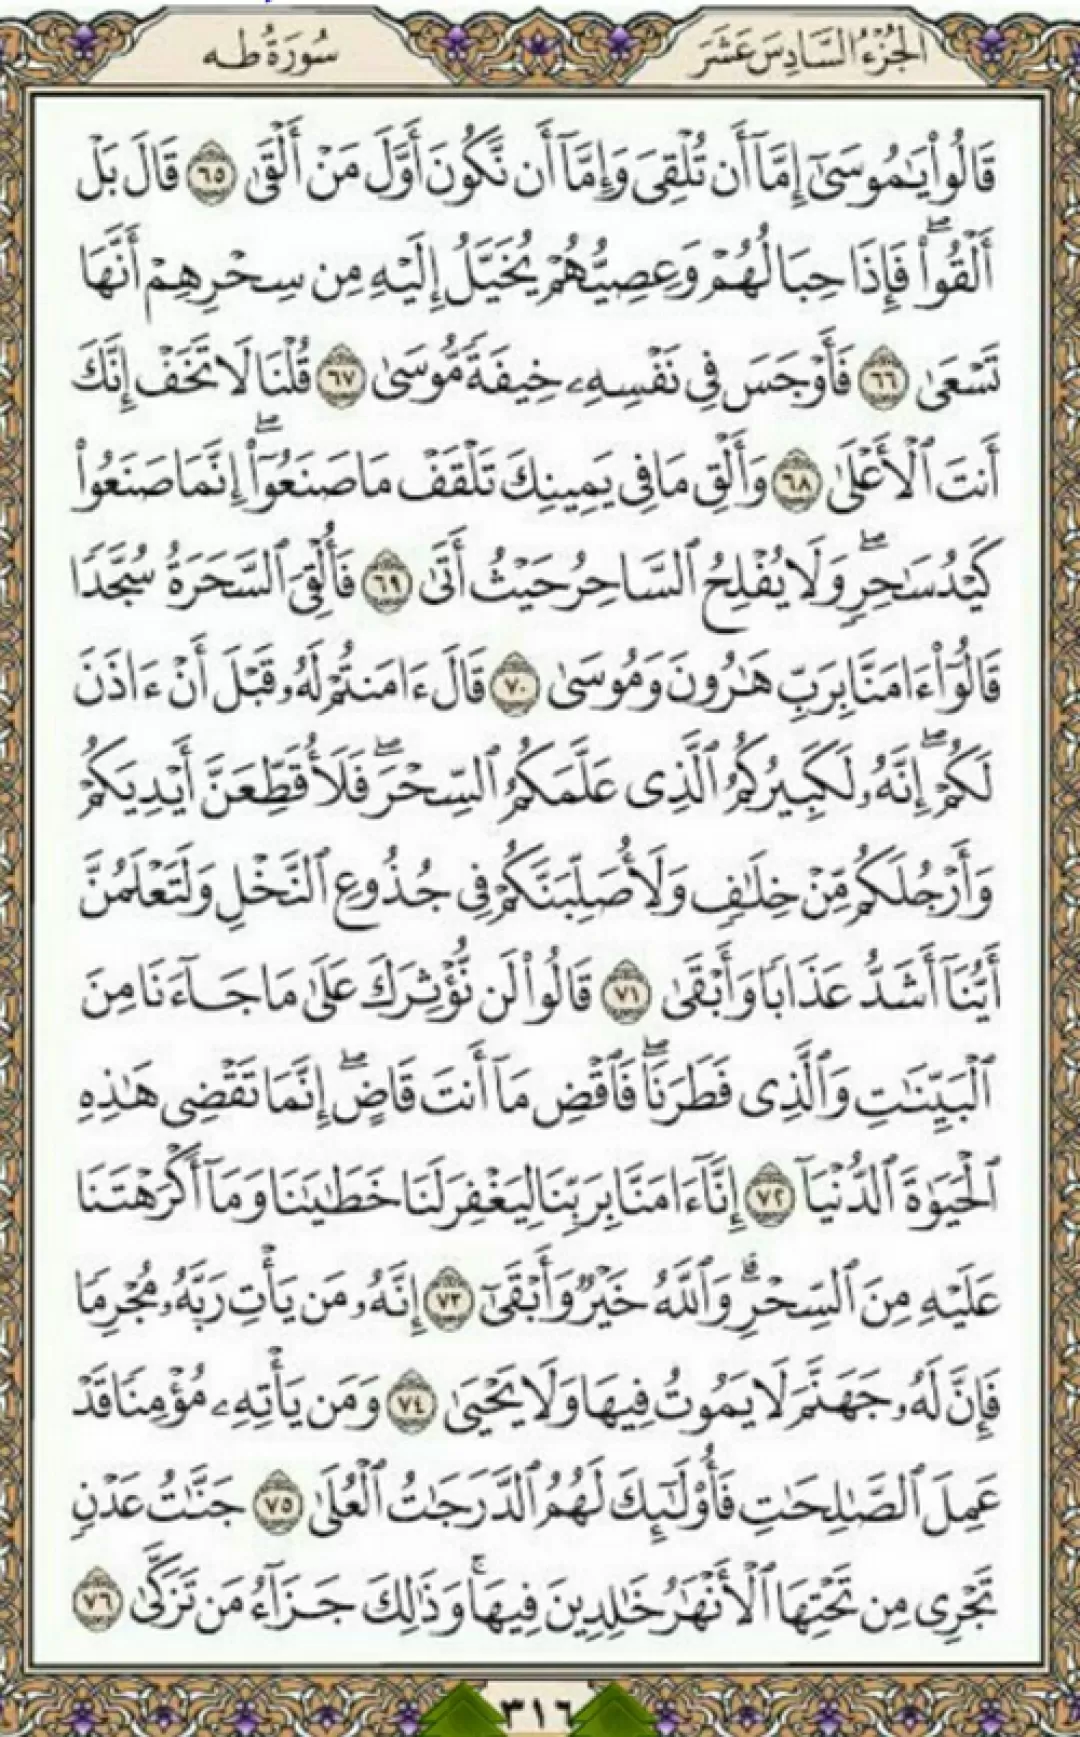 یک صفحه از نسیم نورانی قرآن مجید